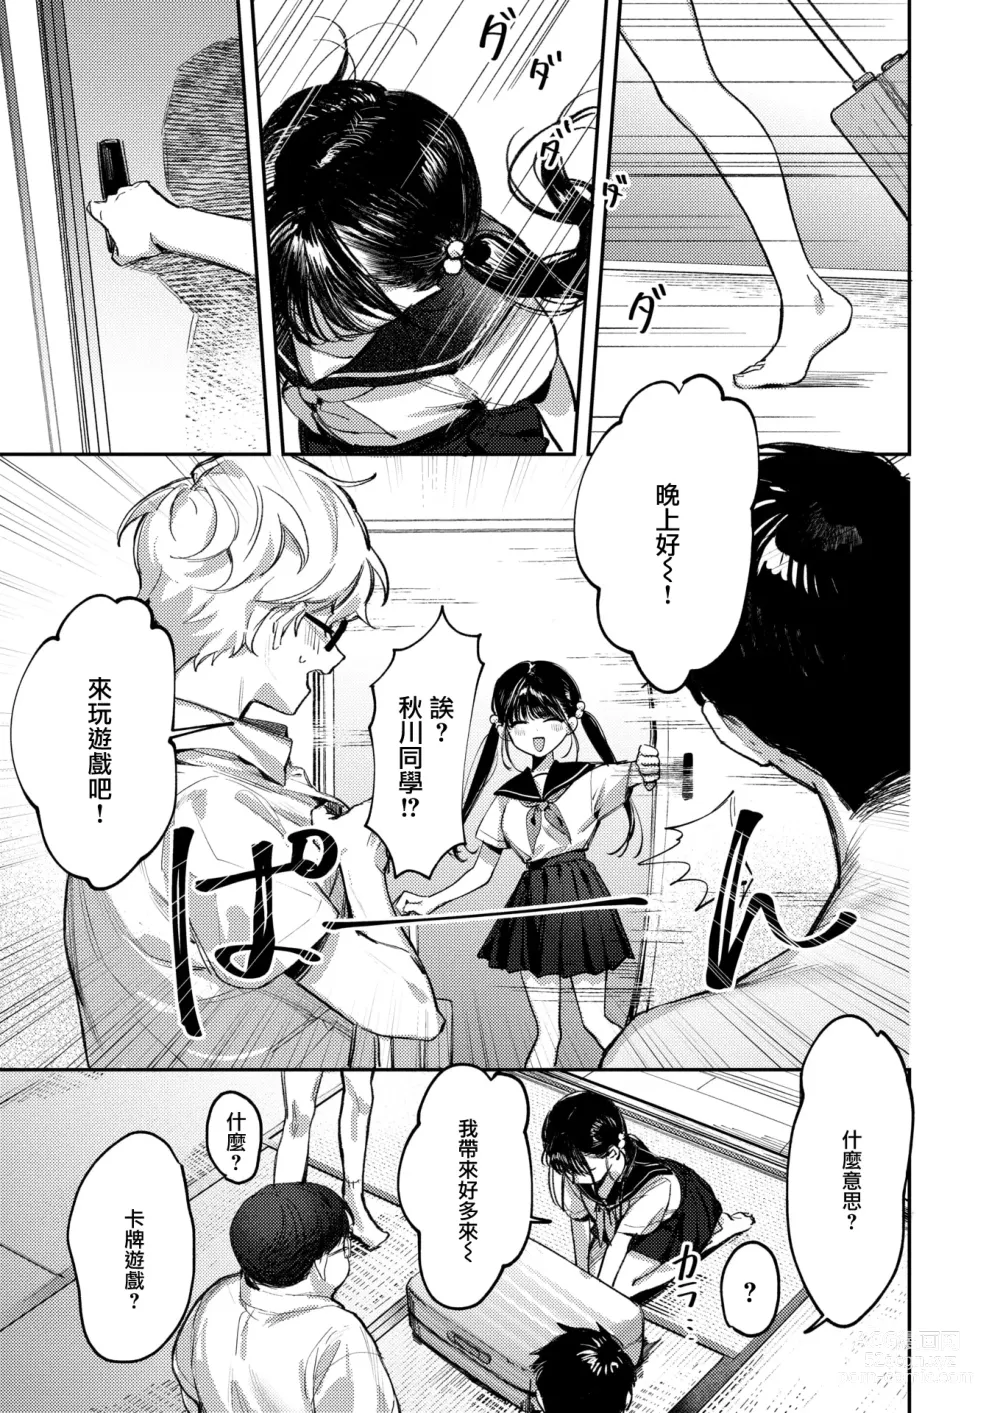 Page 6 of manga Doutei Reaper Sotsugyou Ryokou